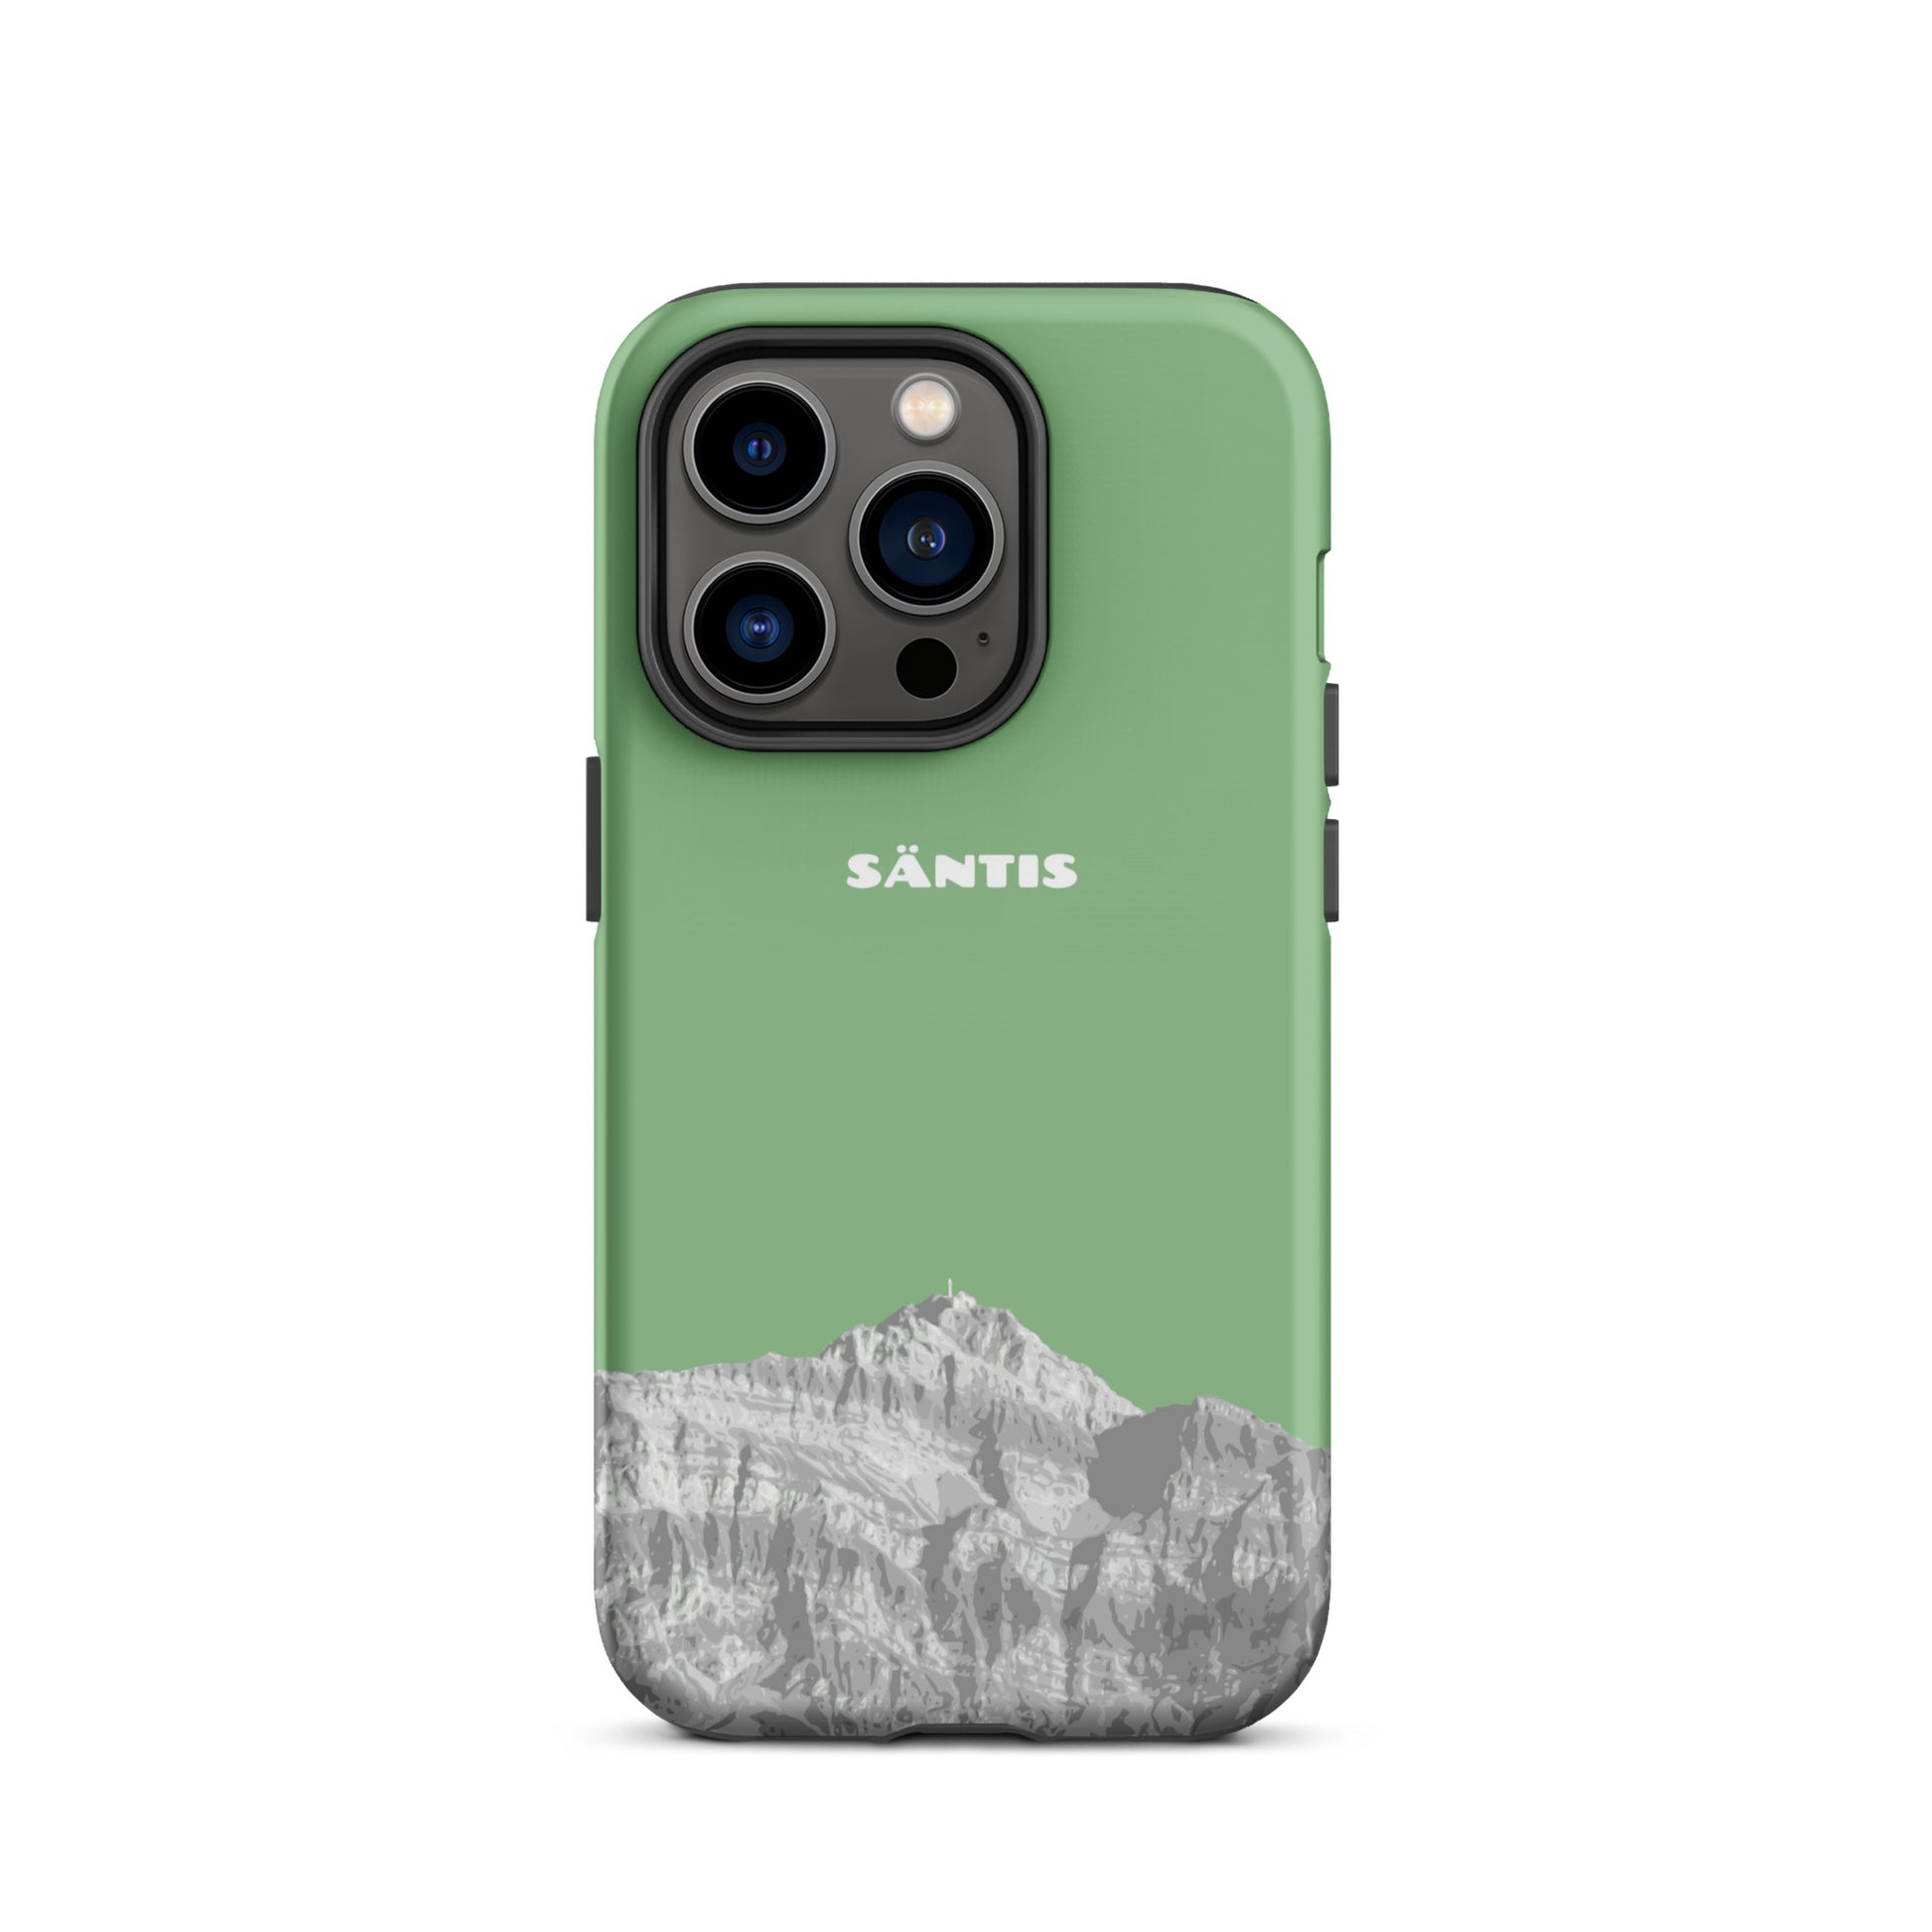 Hülle für das iPhone 14 Pro von Apple in der Farbe Hellgrün, dass den Säntis im Alpstein zeigt.